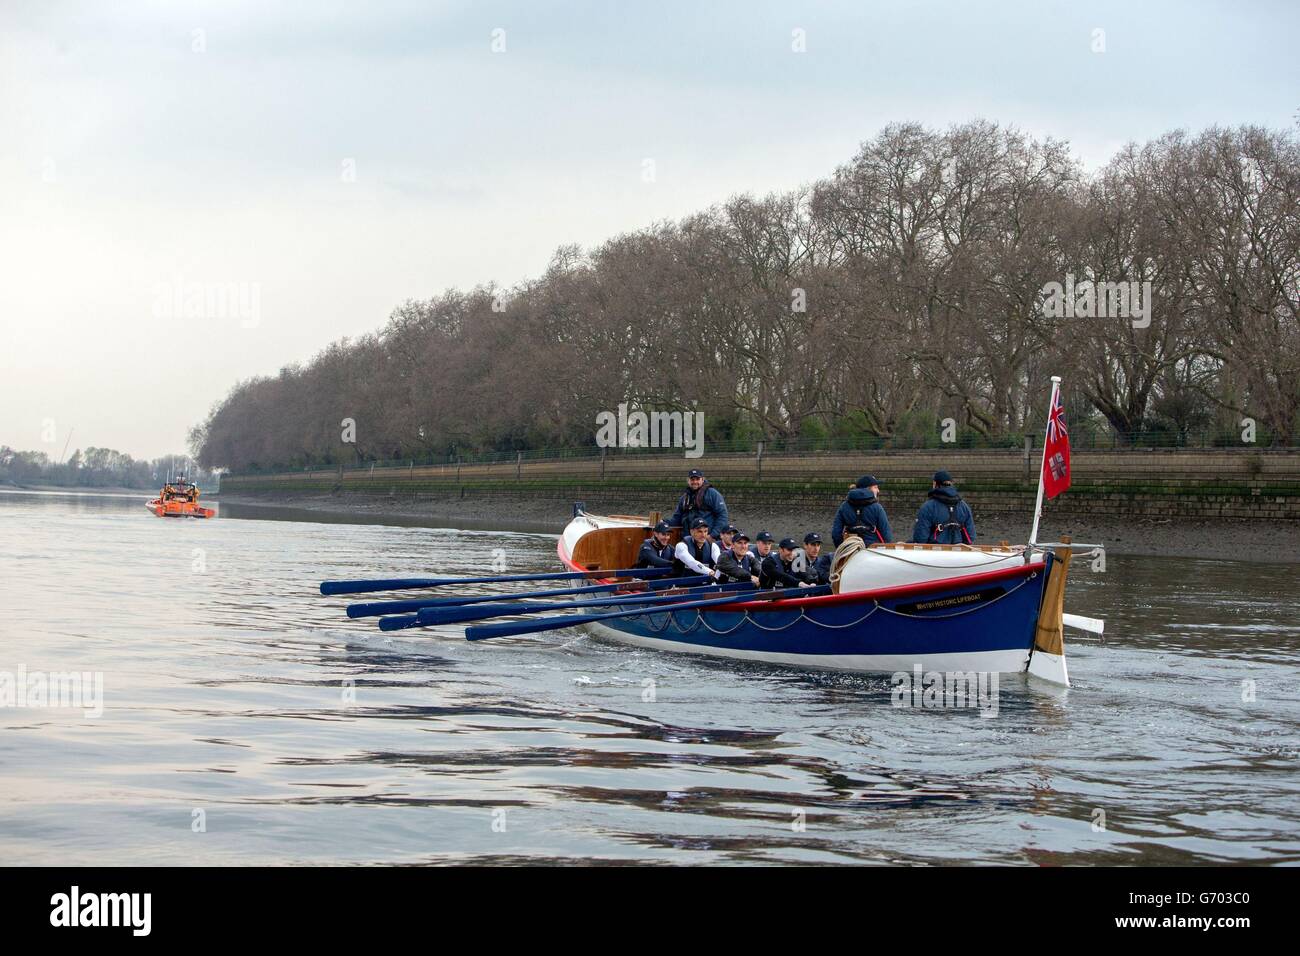 Les membres de l'équipe d'aviron de Grande-Bretagne se sont joints à l'équipage de la Royal National Lifeboat institution (RNLI) pour se diriger à 733 mètres le long de la Tamise vers Hammersmith dans un bateau de sauvetage RNLI original de 100 ans appelé William Riley. Départ de l'Université Stone à Putney, à l'ouest de Londres, qui est le début officiel de la course de Cambridge et d'Oxford Boat. L'équipage a ramé la distance pour promouvoir la prochaine course de bateau alternatif qui aura lieu le 6 avril où 250 bateaux de sauvetage miniatures prendront à la Tamise dans une course pour sensibiliser la population à la RNLI sur la Tamise. Banque D'Images